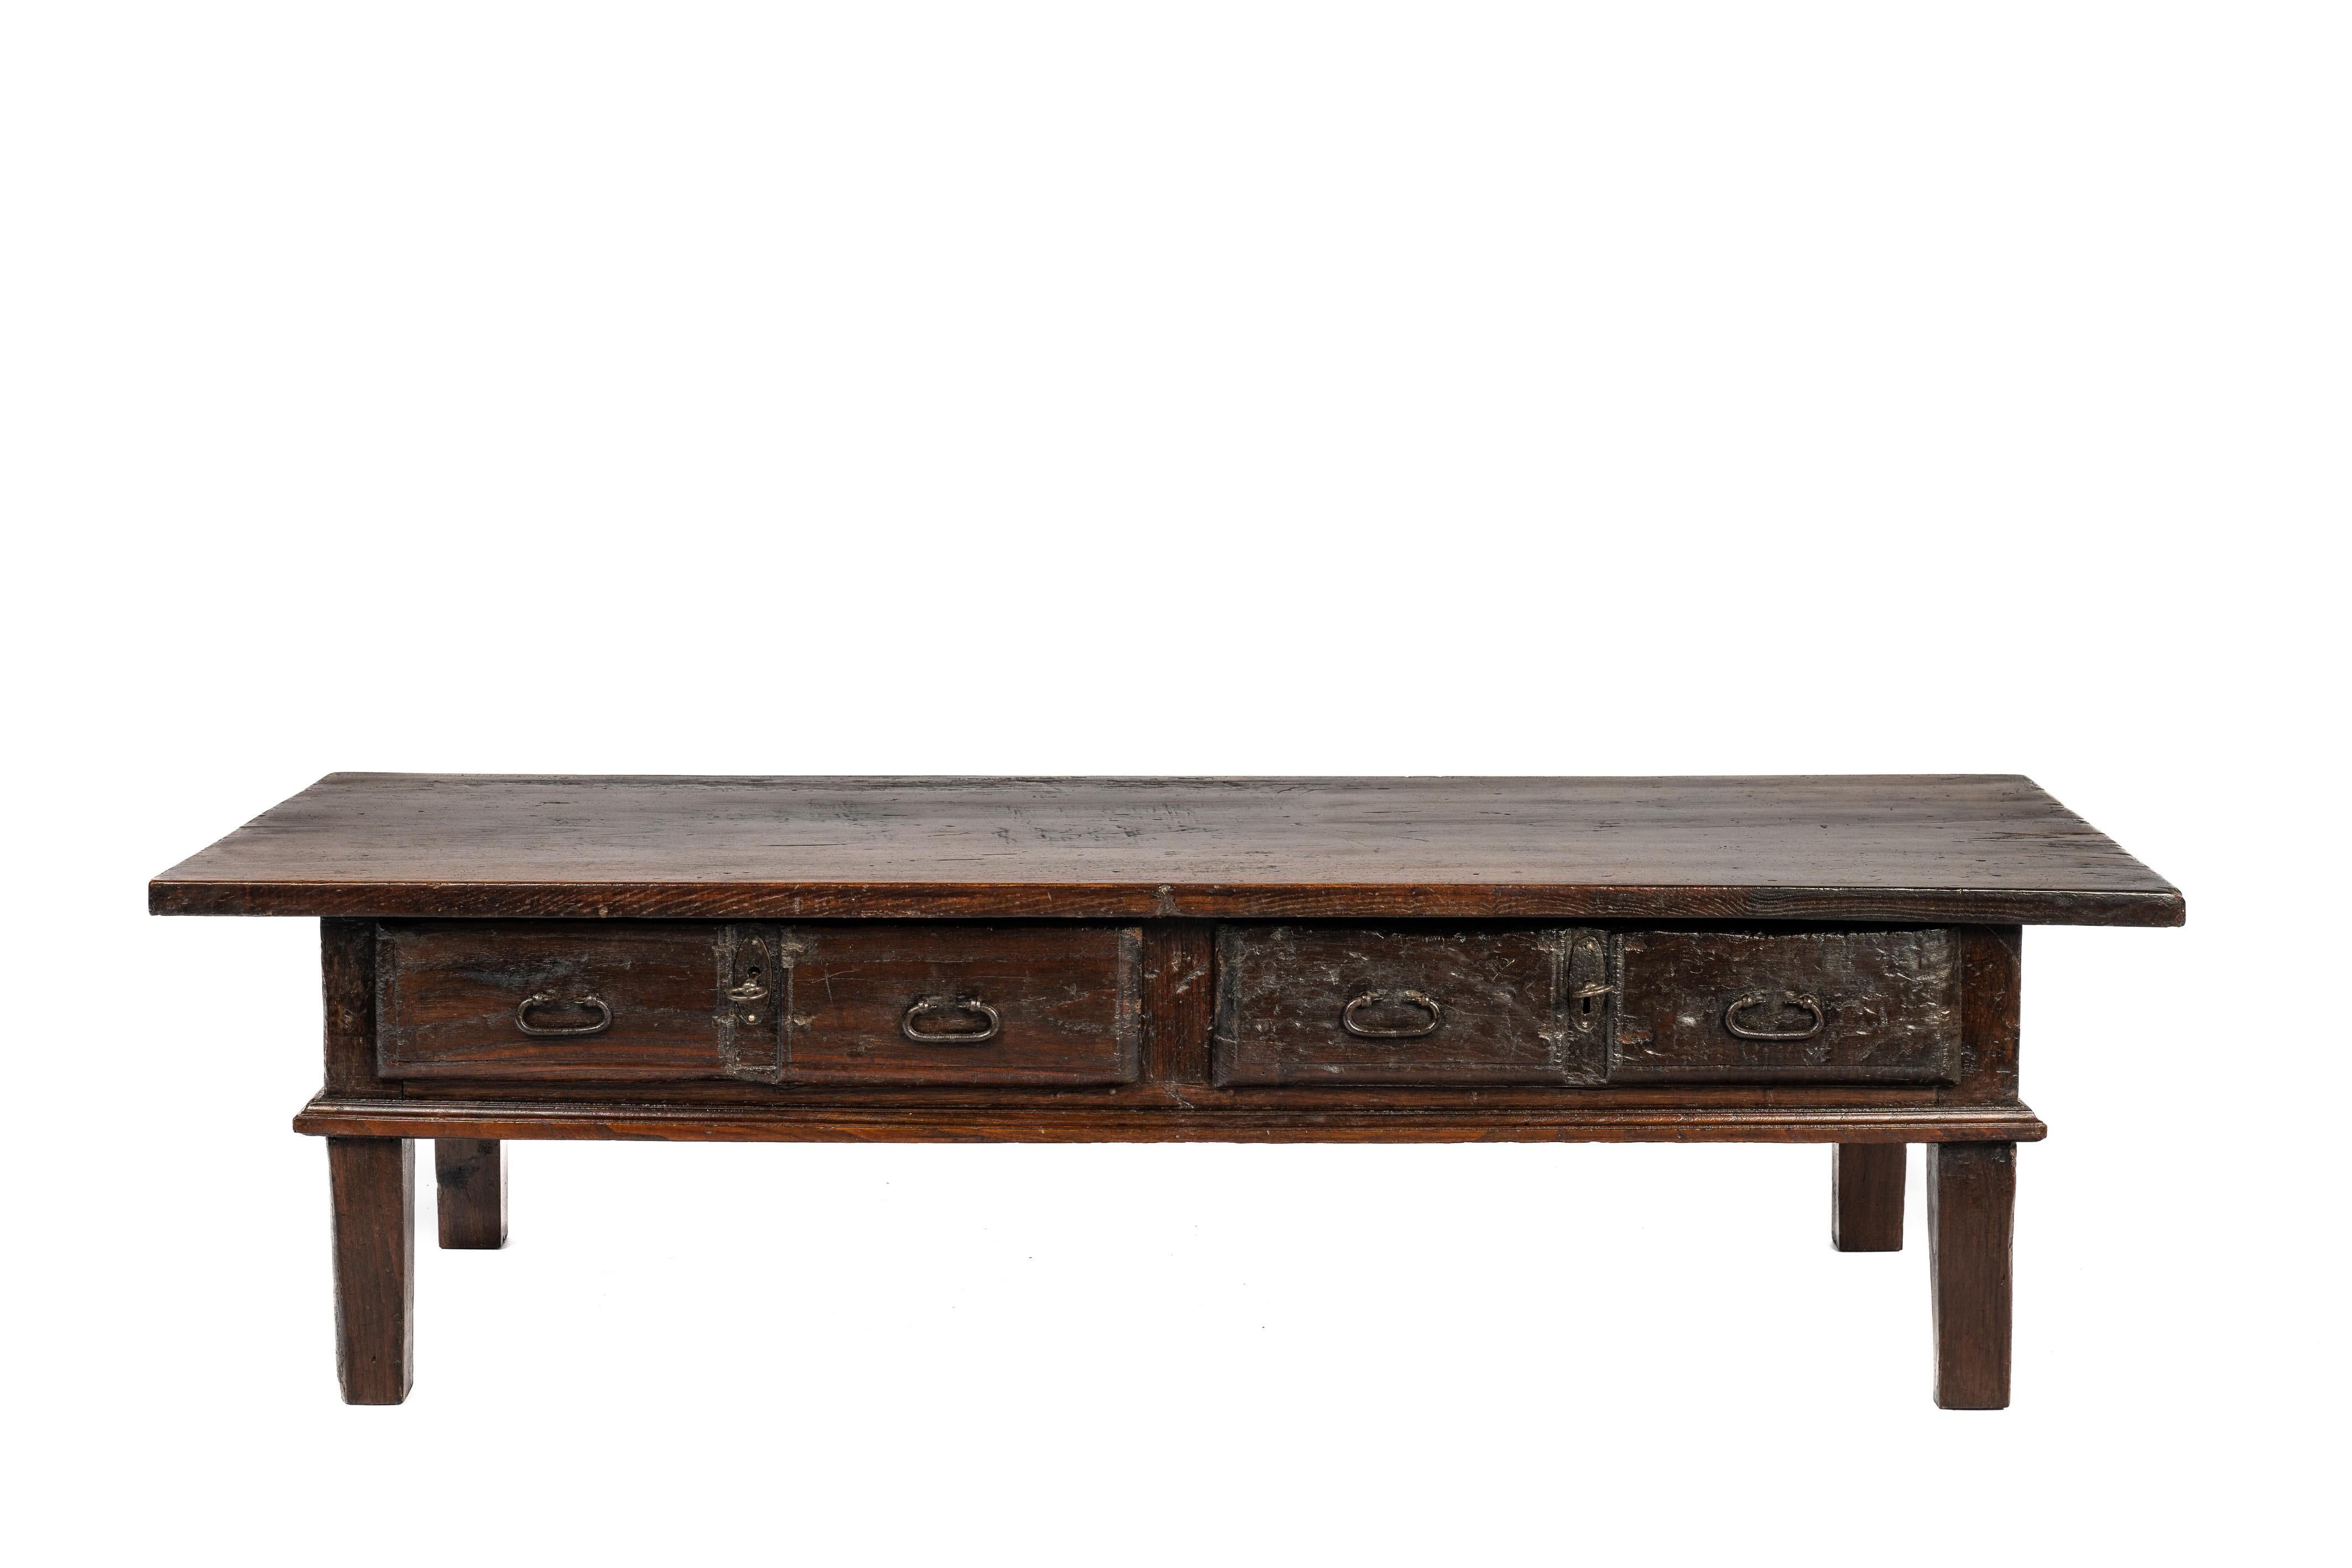 Nous vous proposons ici une fantastique table basse ou table de salon originaire de l'Espagne rurale et datant d'environ 1800. Le plateau de la table est unique et a été fabriqué à partir d'une seule planche de bois de châtaignier massif d'une